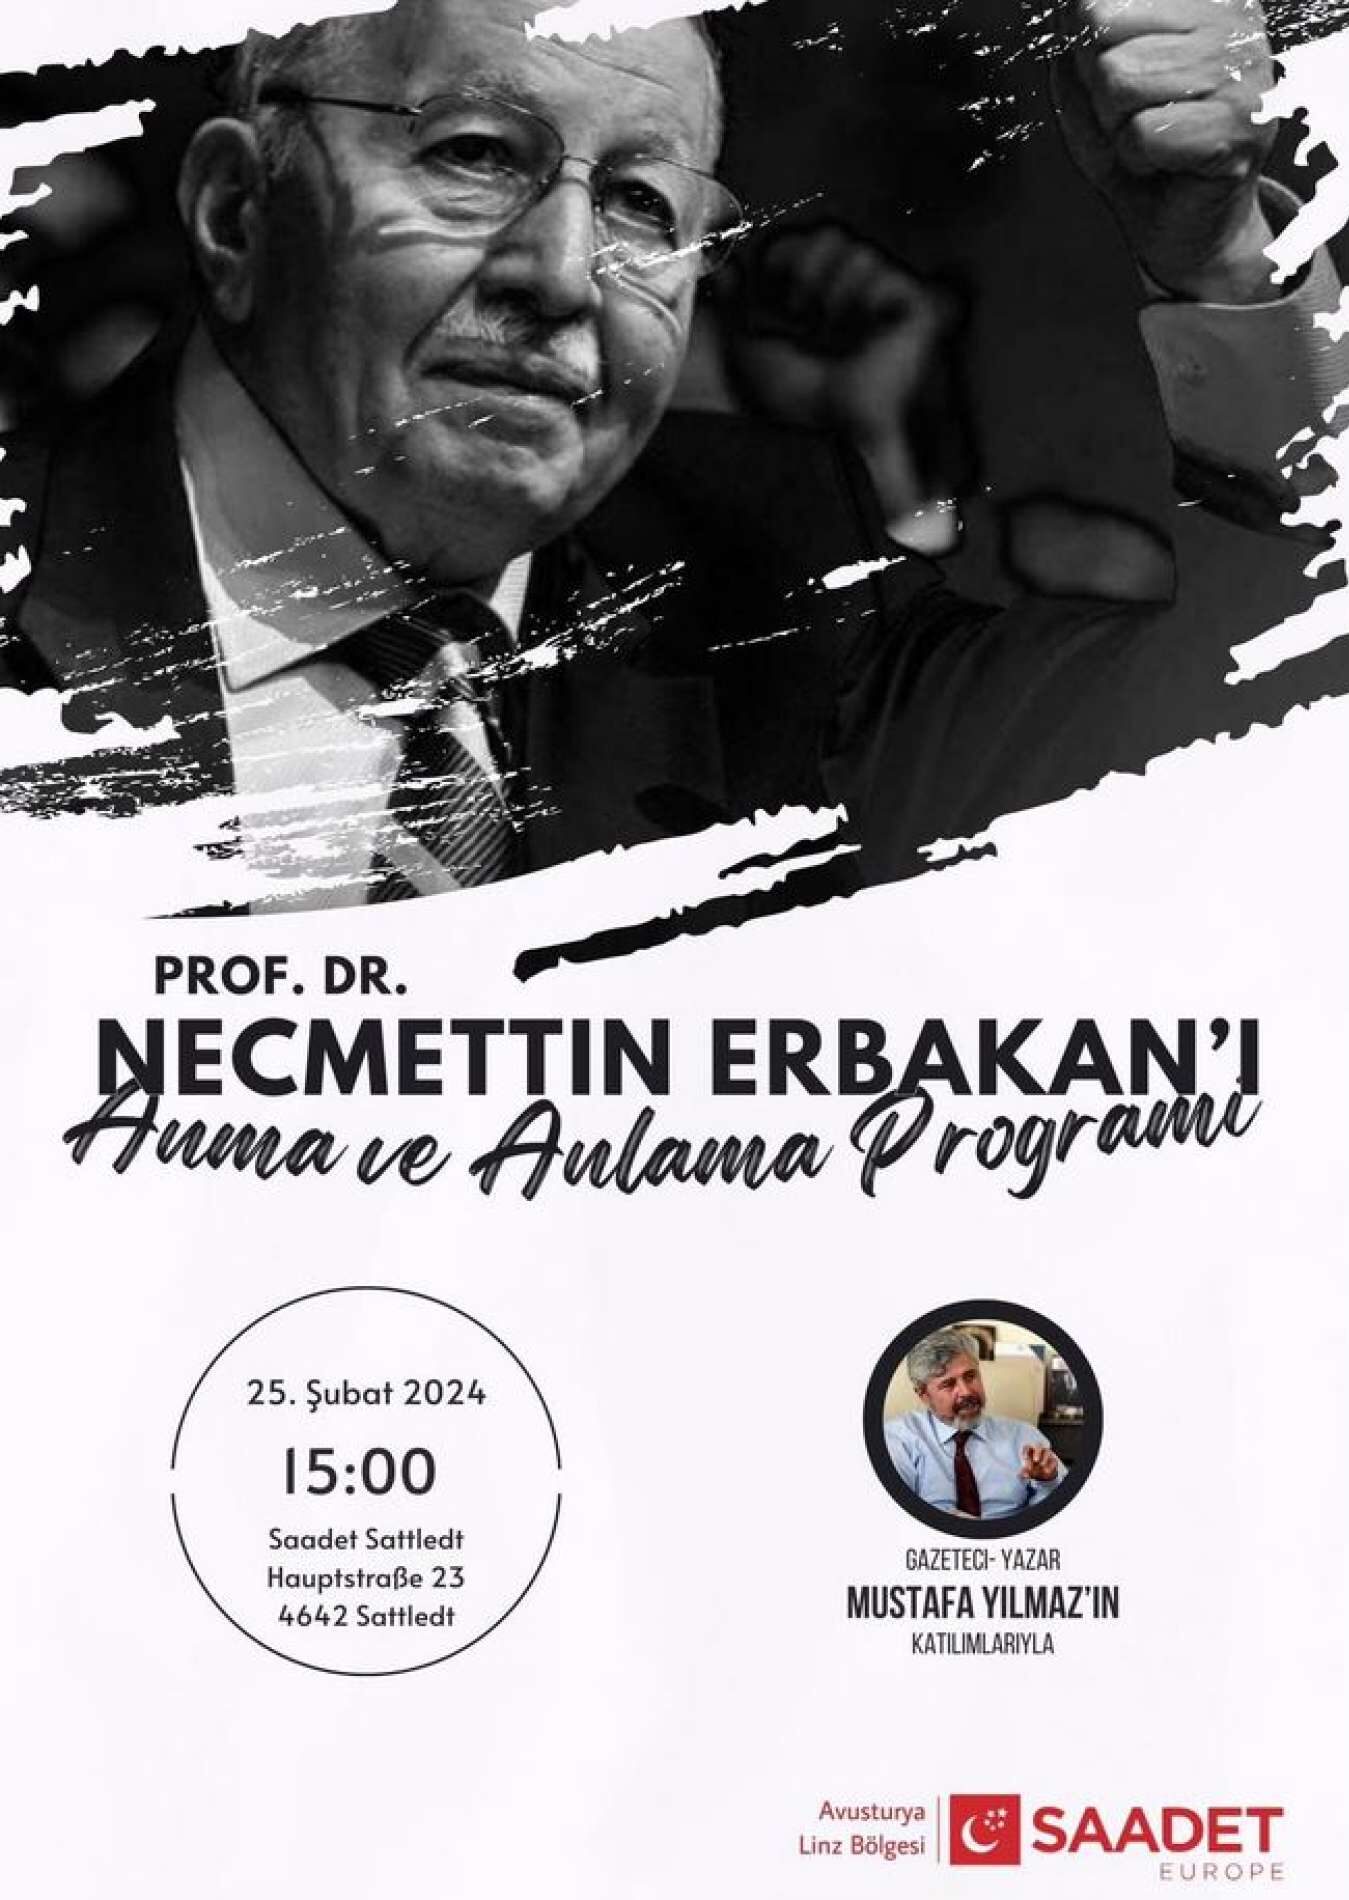 Einladung zum Erbakan-Gedenken des Oberösterreich-Ablegers der türkischen Islamisten-Partei Saadet in Sattledt an diesem Sonntag.